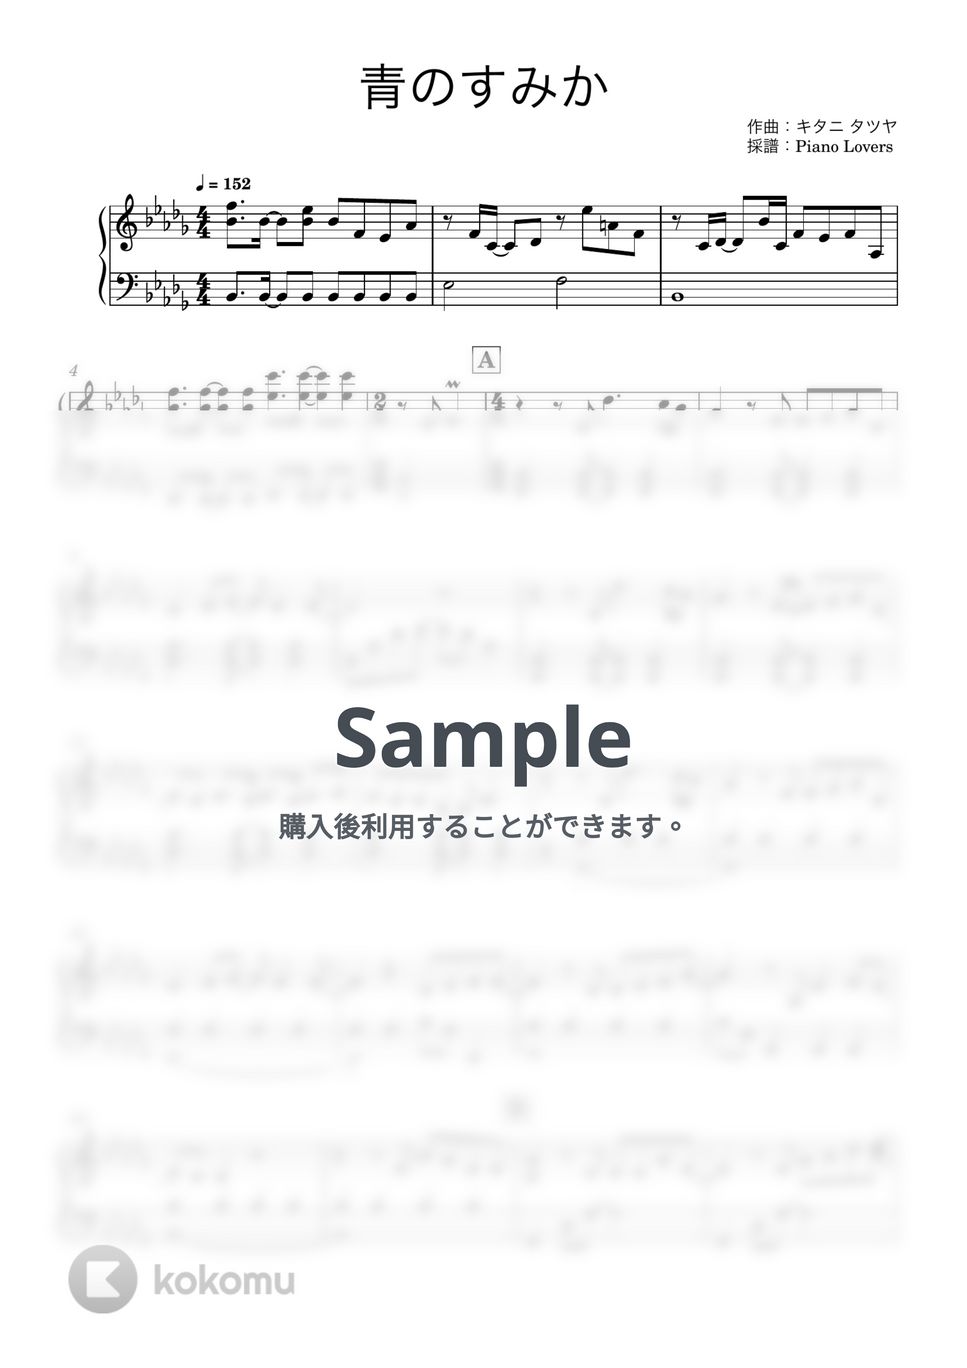 キタニタツヤ - 青のすみか (呪術廻戦 / ピアノ楽譜 / 初級) by Piano Lovers. jp